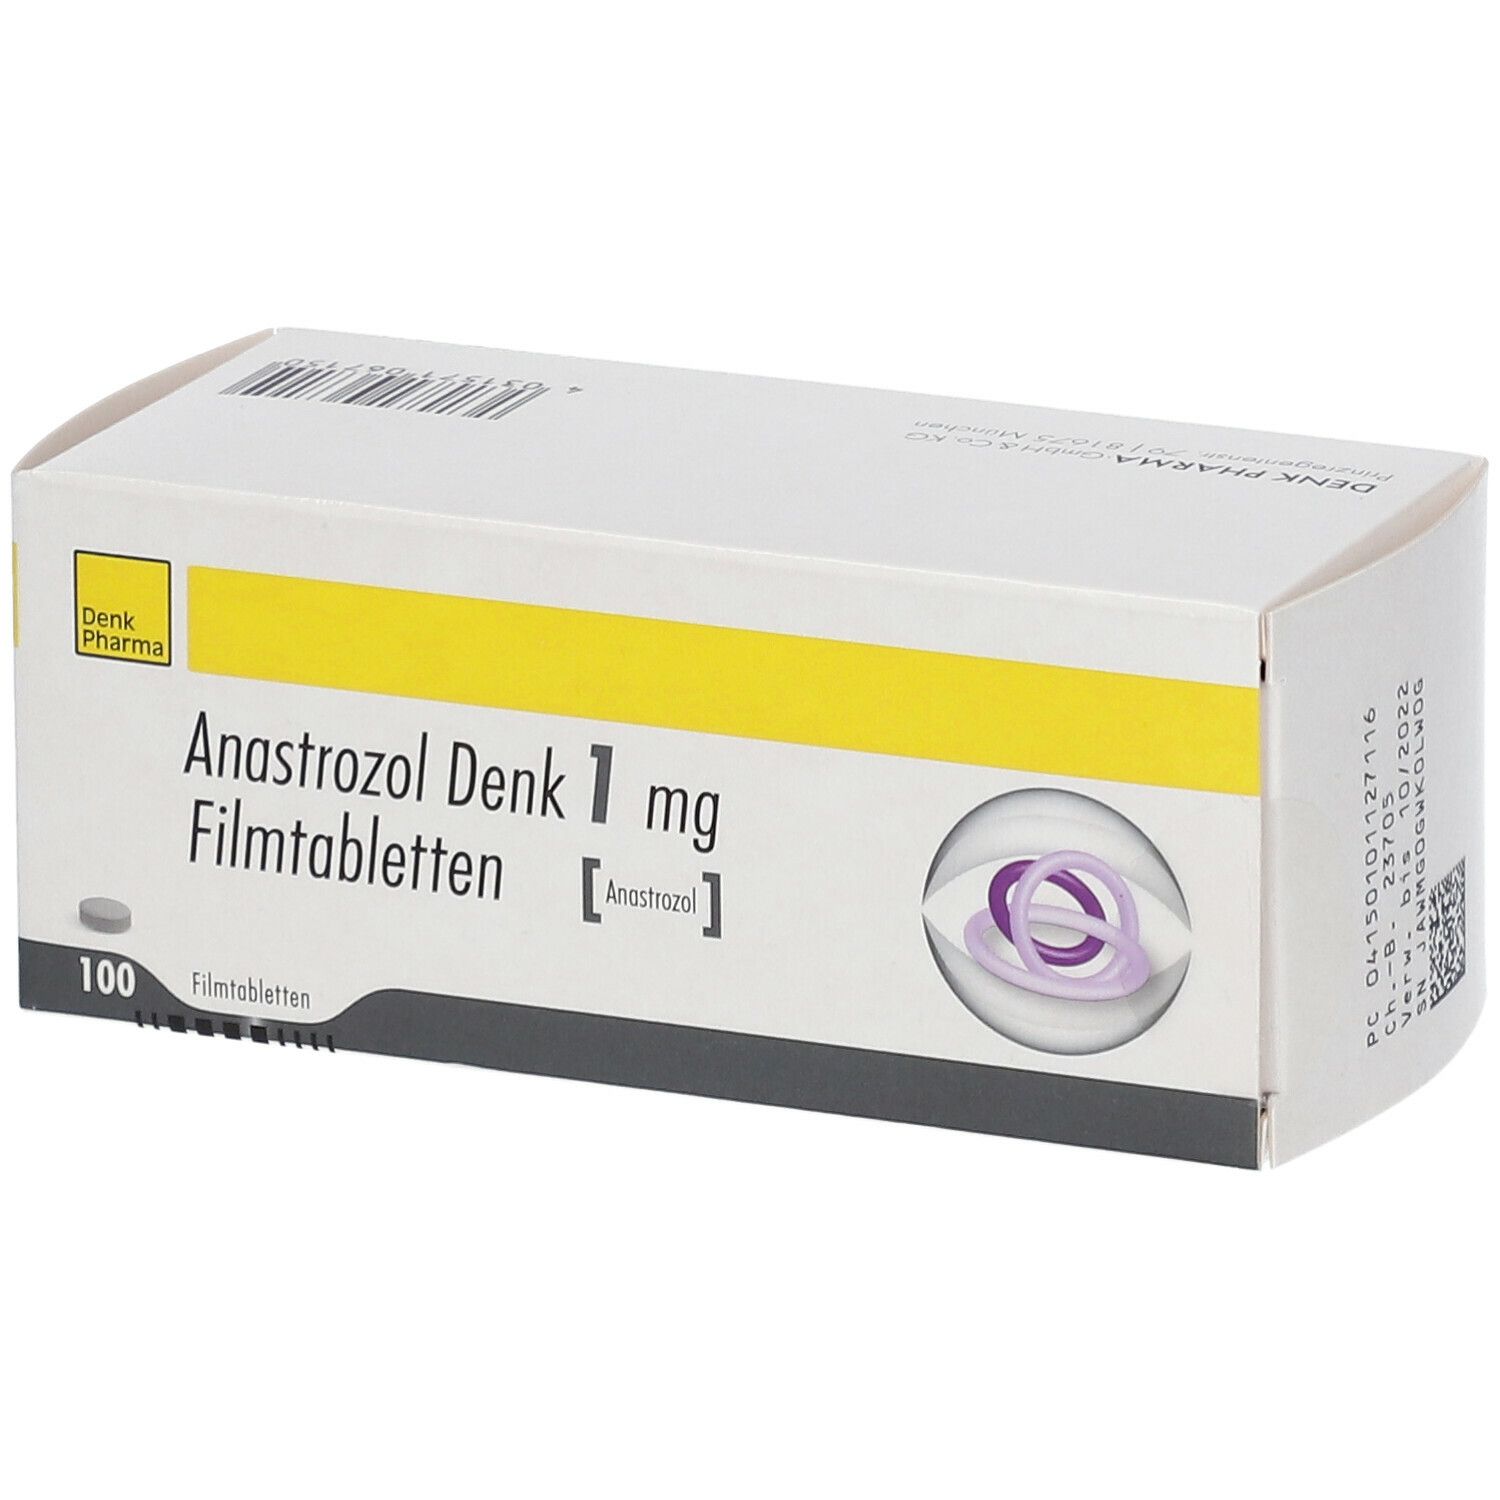 Anastrozol Denk 1 mg Filmtabletten